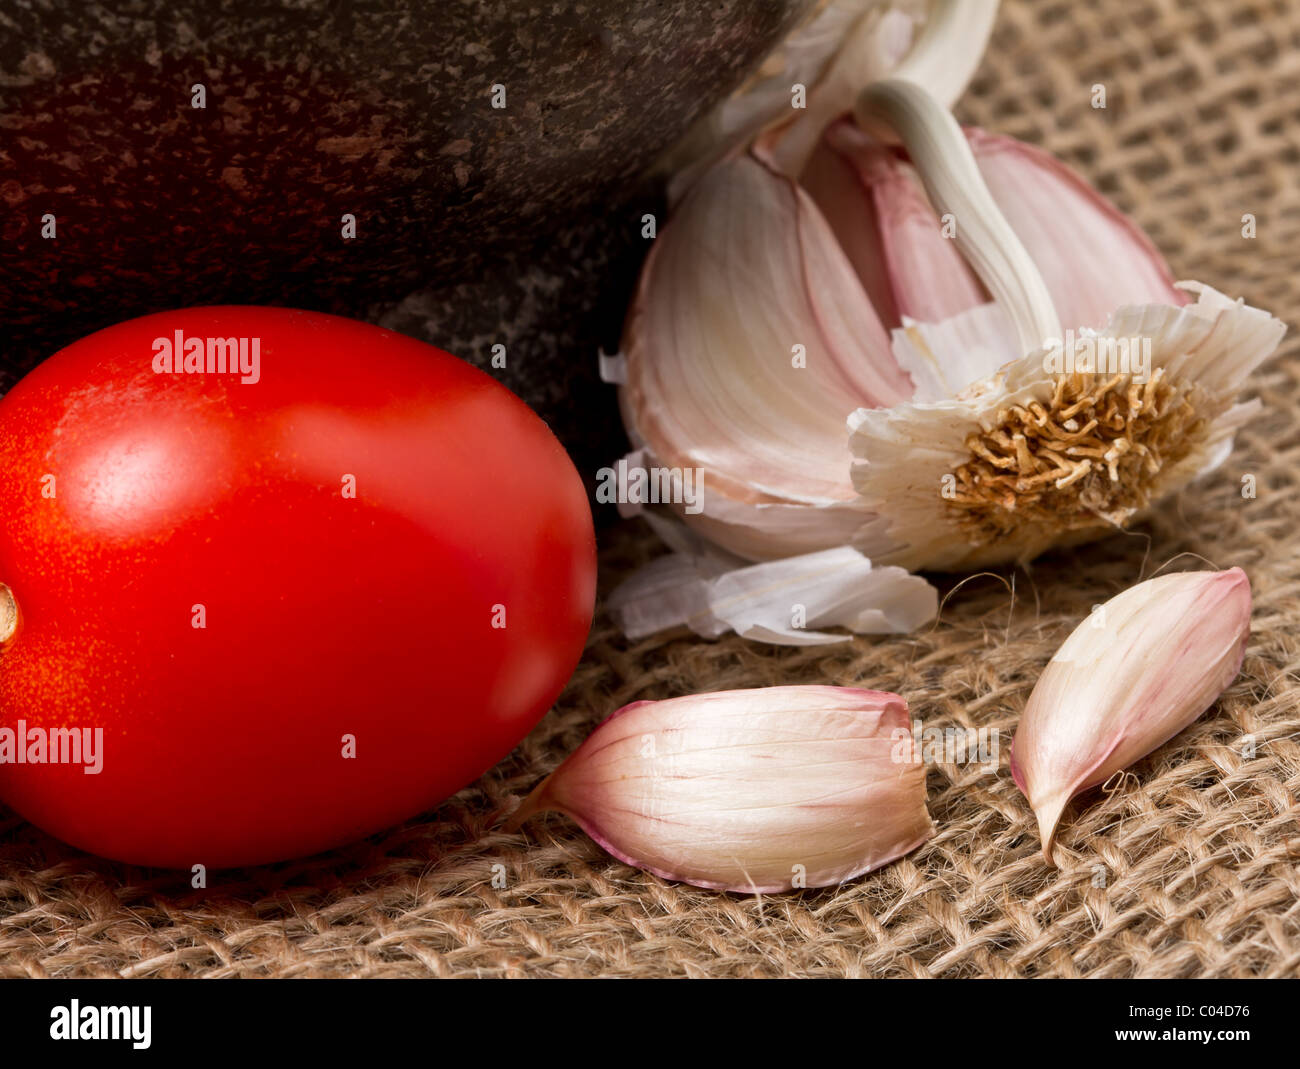 Einfach lebendige grundlegenden Zutaten der italienischen Küche, Knoblauch und Tomaten. Stockfoto